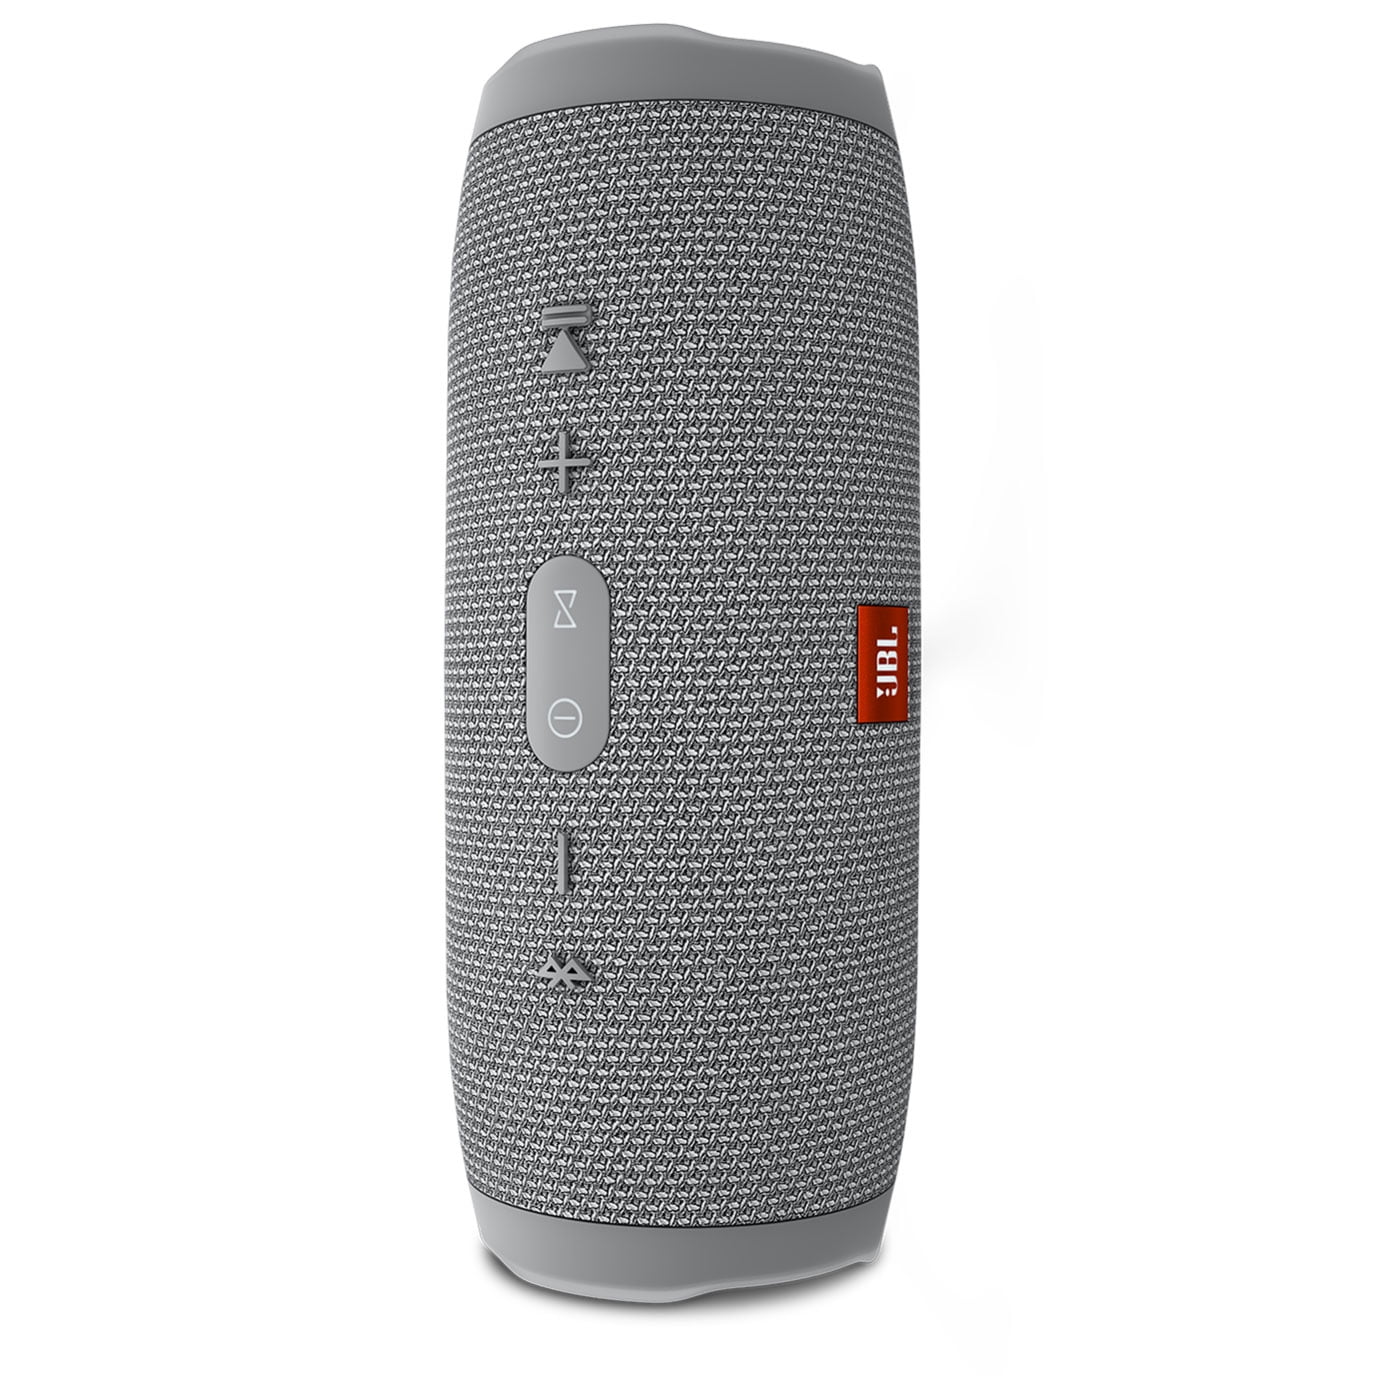 nåde etik Over hoved og skulder JBL Charge 3 Waterproof Portable Bluetooth Speaker - Walmart.com